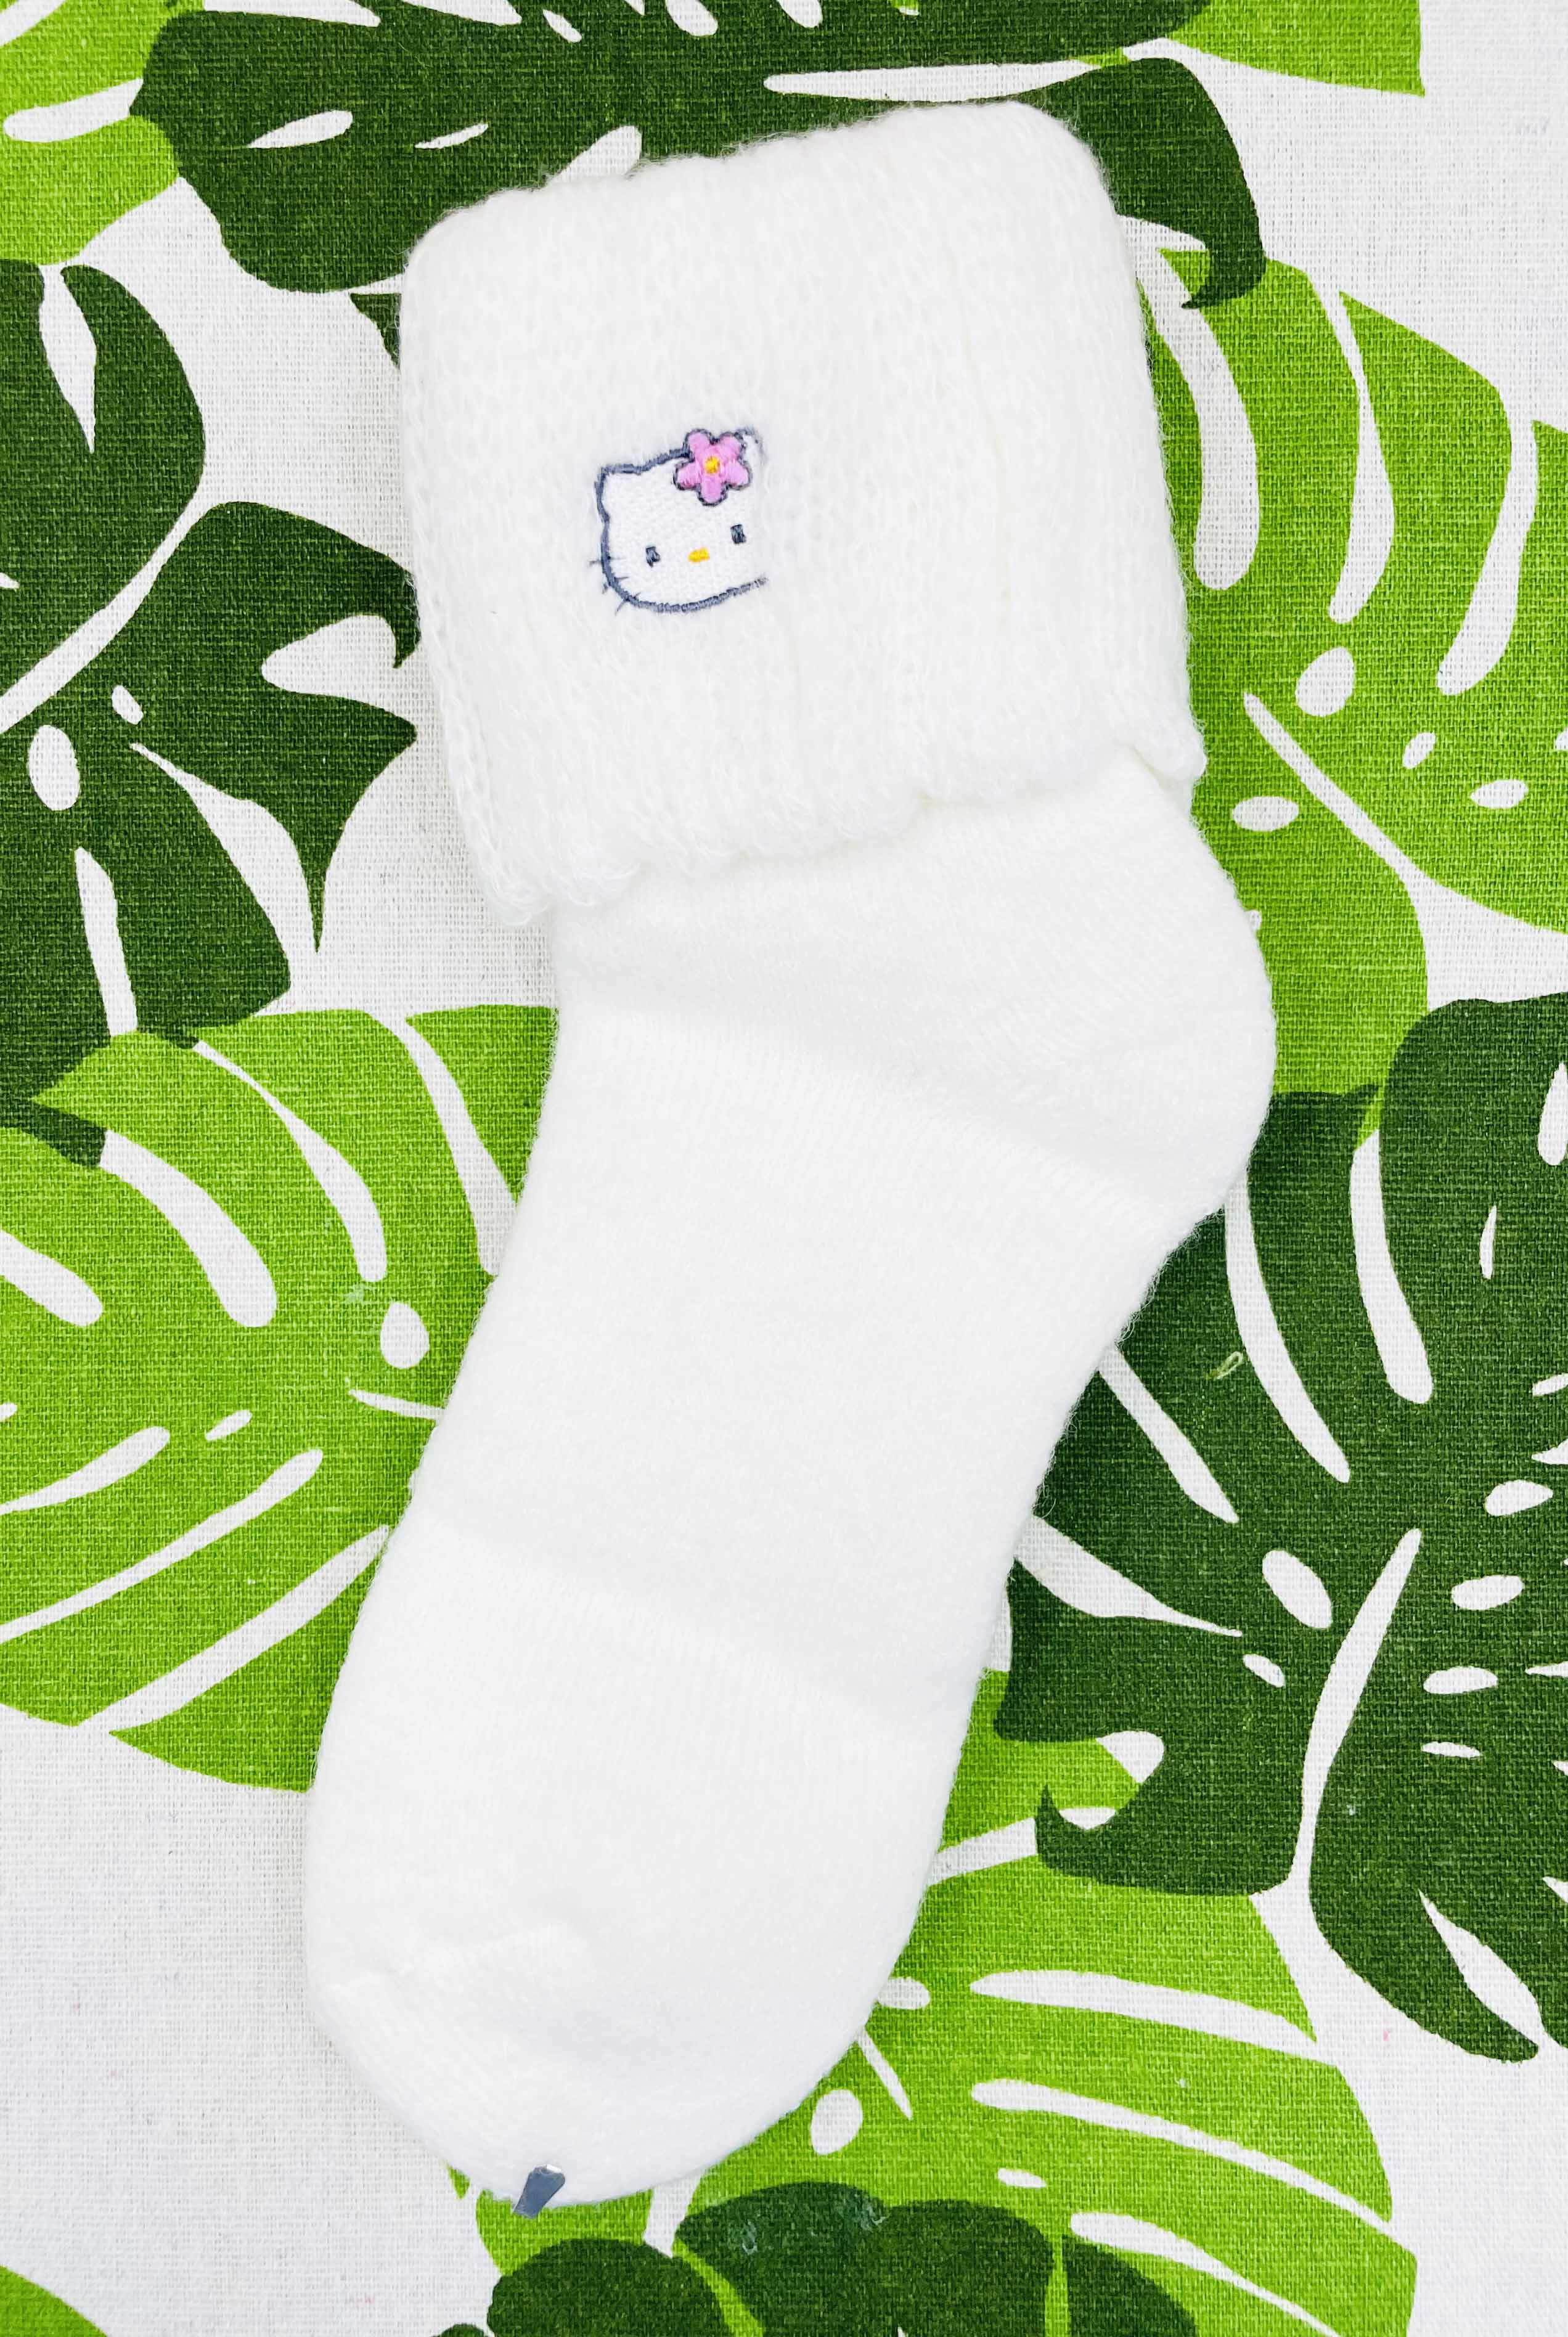 【震撼精品百貨】Hello Kitty 凱蒂貓~日本SANRIO三麗鷗 KITTY針織反折襪-白*13233